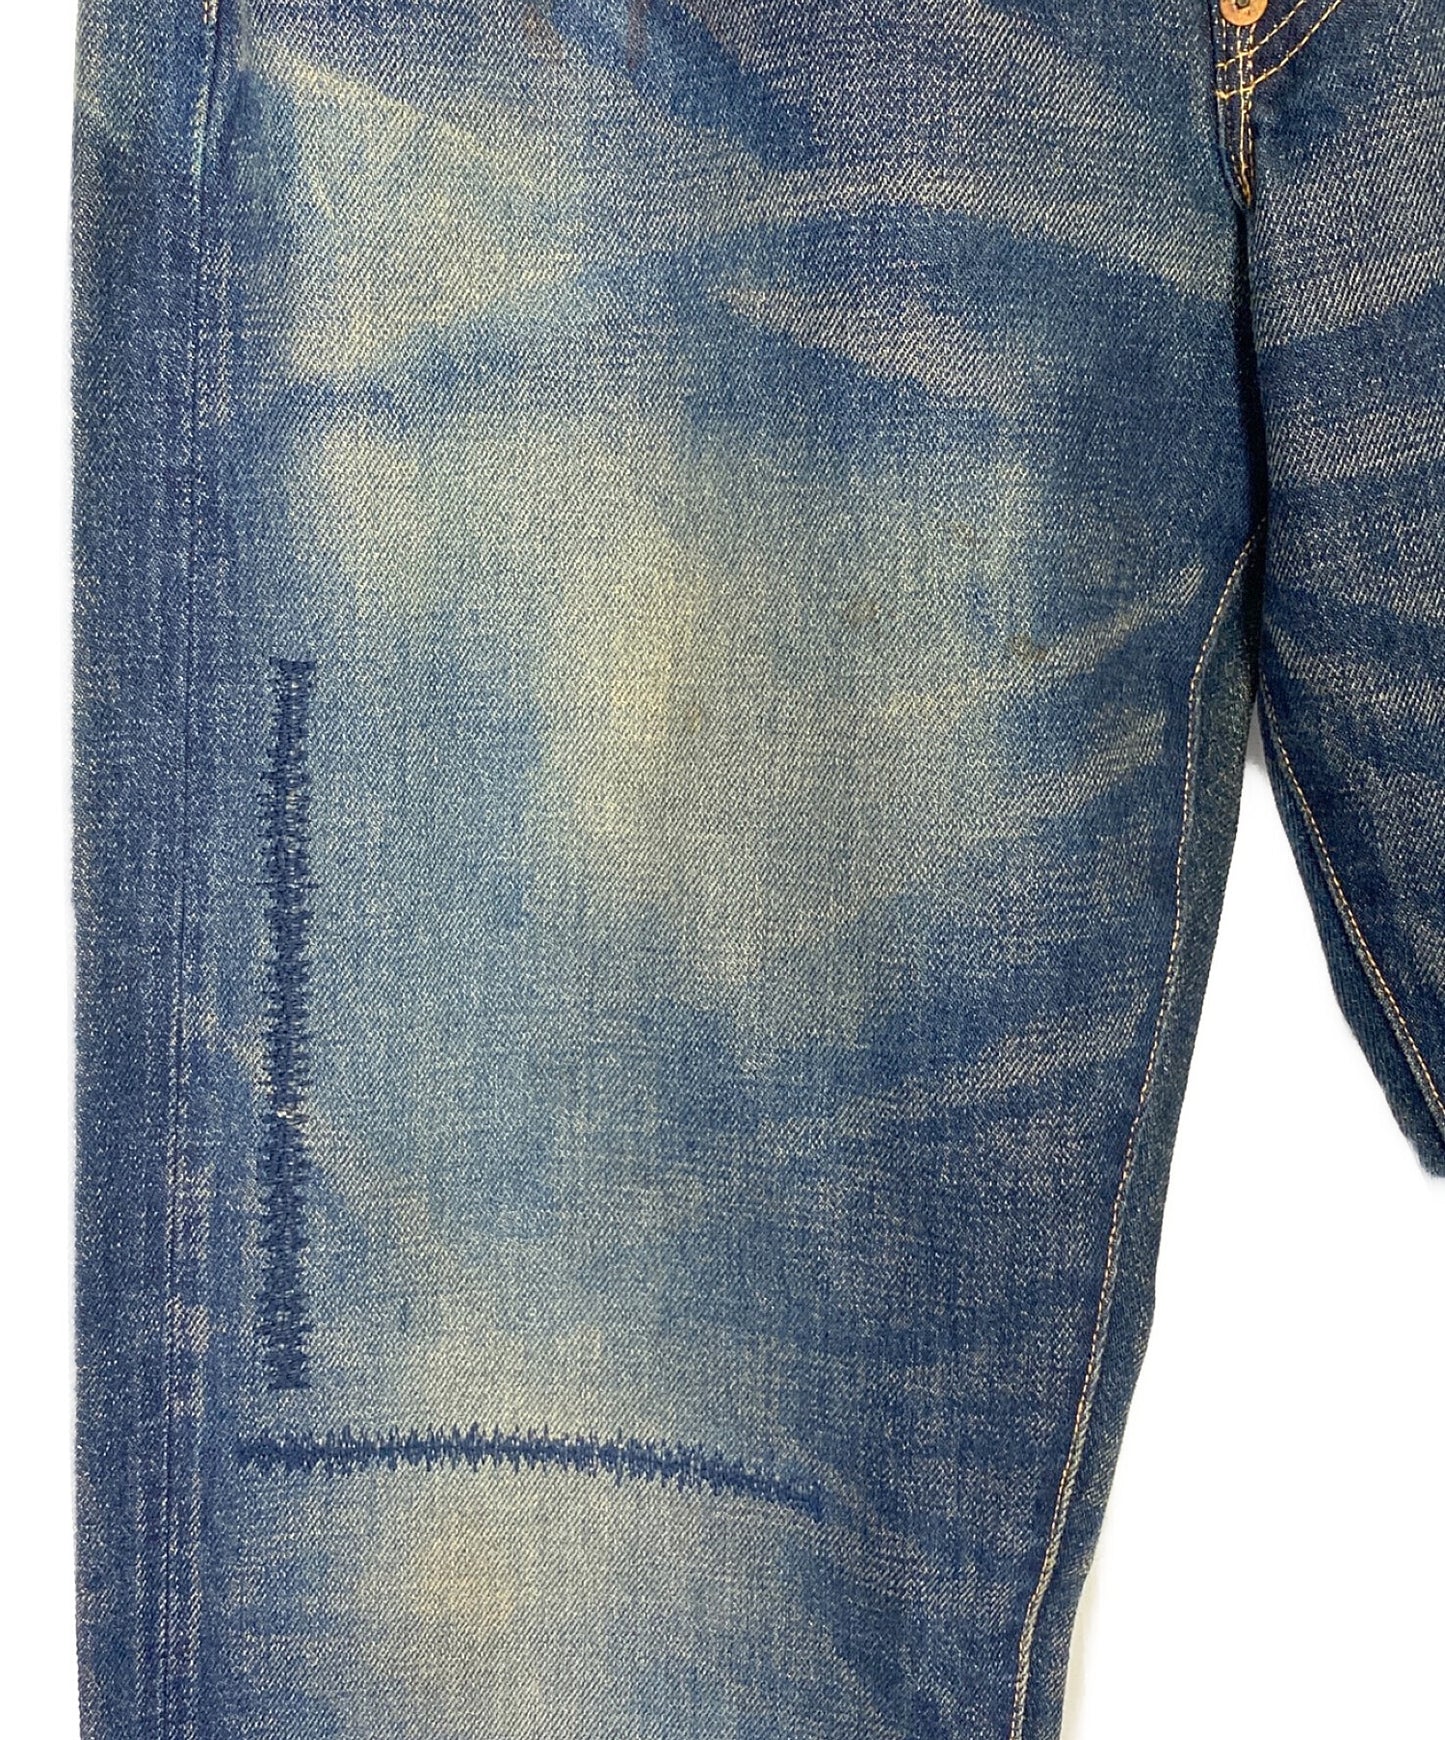 เสื้อผ้าวินเทจของ Levi ×ละแวกใกล้เคียง (เสื้อผ้าวินเทจของ Levi ×ย่าน) 501xx กางเกงยีนส์ 33501-0034